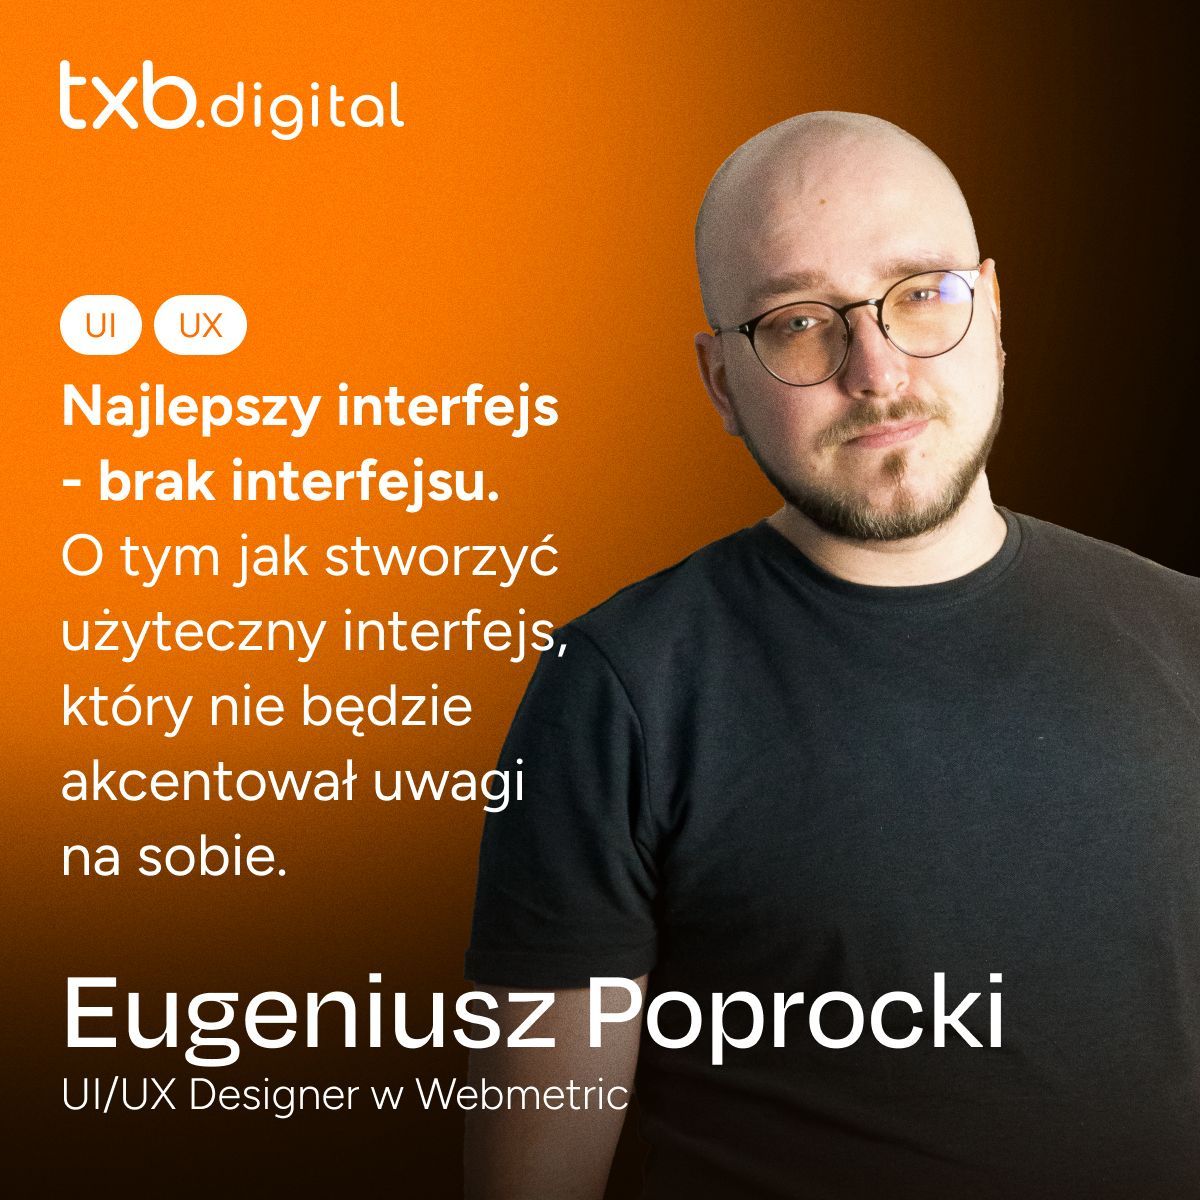 Na obrazku widzimy mężczyznę w średnim wieku z krótko ostrzyżoną głową i okrągłymi okularami. Ma brodę i nosi czarny sweter. Mężczyzna patrzy w kamerę z pewnym wyrazem twarzy. Tło obrazka jest pomarańczowe. Po lewej stronie widnieje napis "txb.digital" oraz ikony symbolizujące UI i UX. Poniżej znajduje się tekst w języku polskim, który mówi: "Najlepszy interfejs - brak interfejsu. O tym jak stworzyć użyteczny interfejs, który nie będzie akcentował uwagi na sobie." Na dole obrazka znajduje się większy napis "Eugeniusz Poprocki" oraz informacja, że jest on UI/UX Designerem w Webmetric.